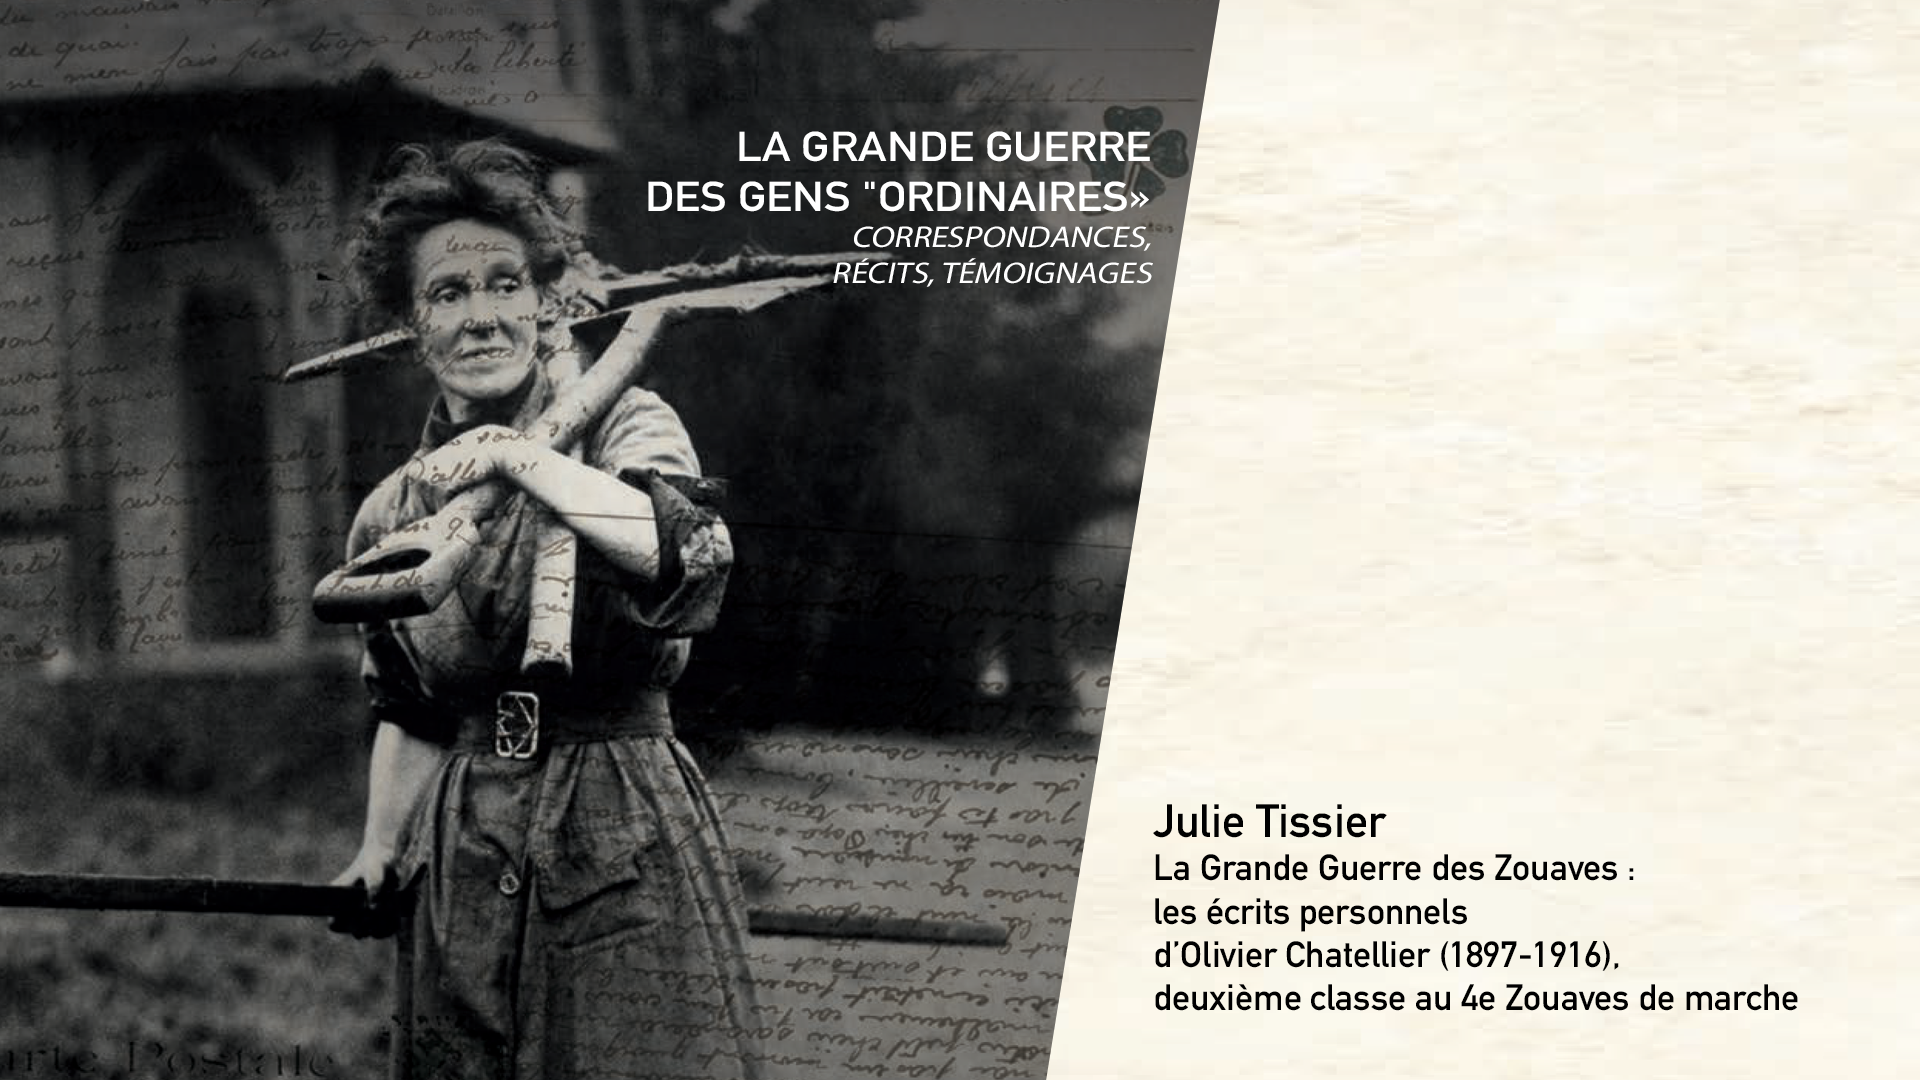 Julie Tissier - La Grande Guerre des Zouaves : les écrits personnels d’Olivier Chatellier (1897-1916), deuxième classe au 4e Zouaves de marche.